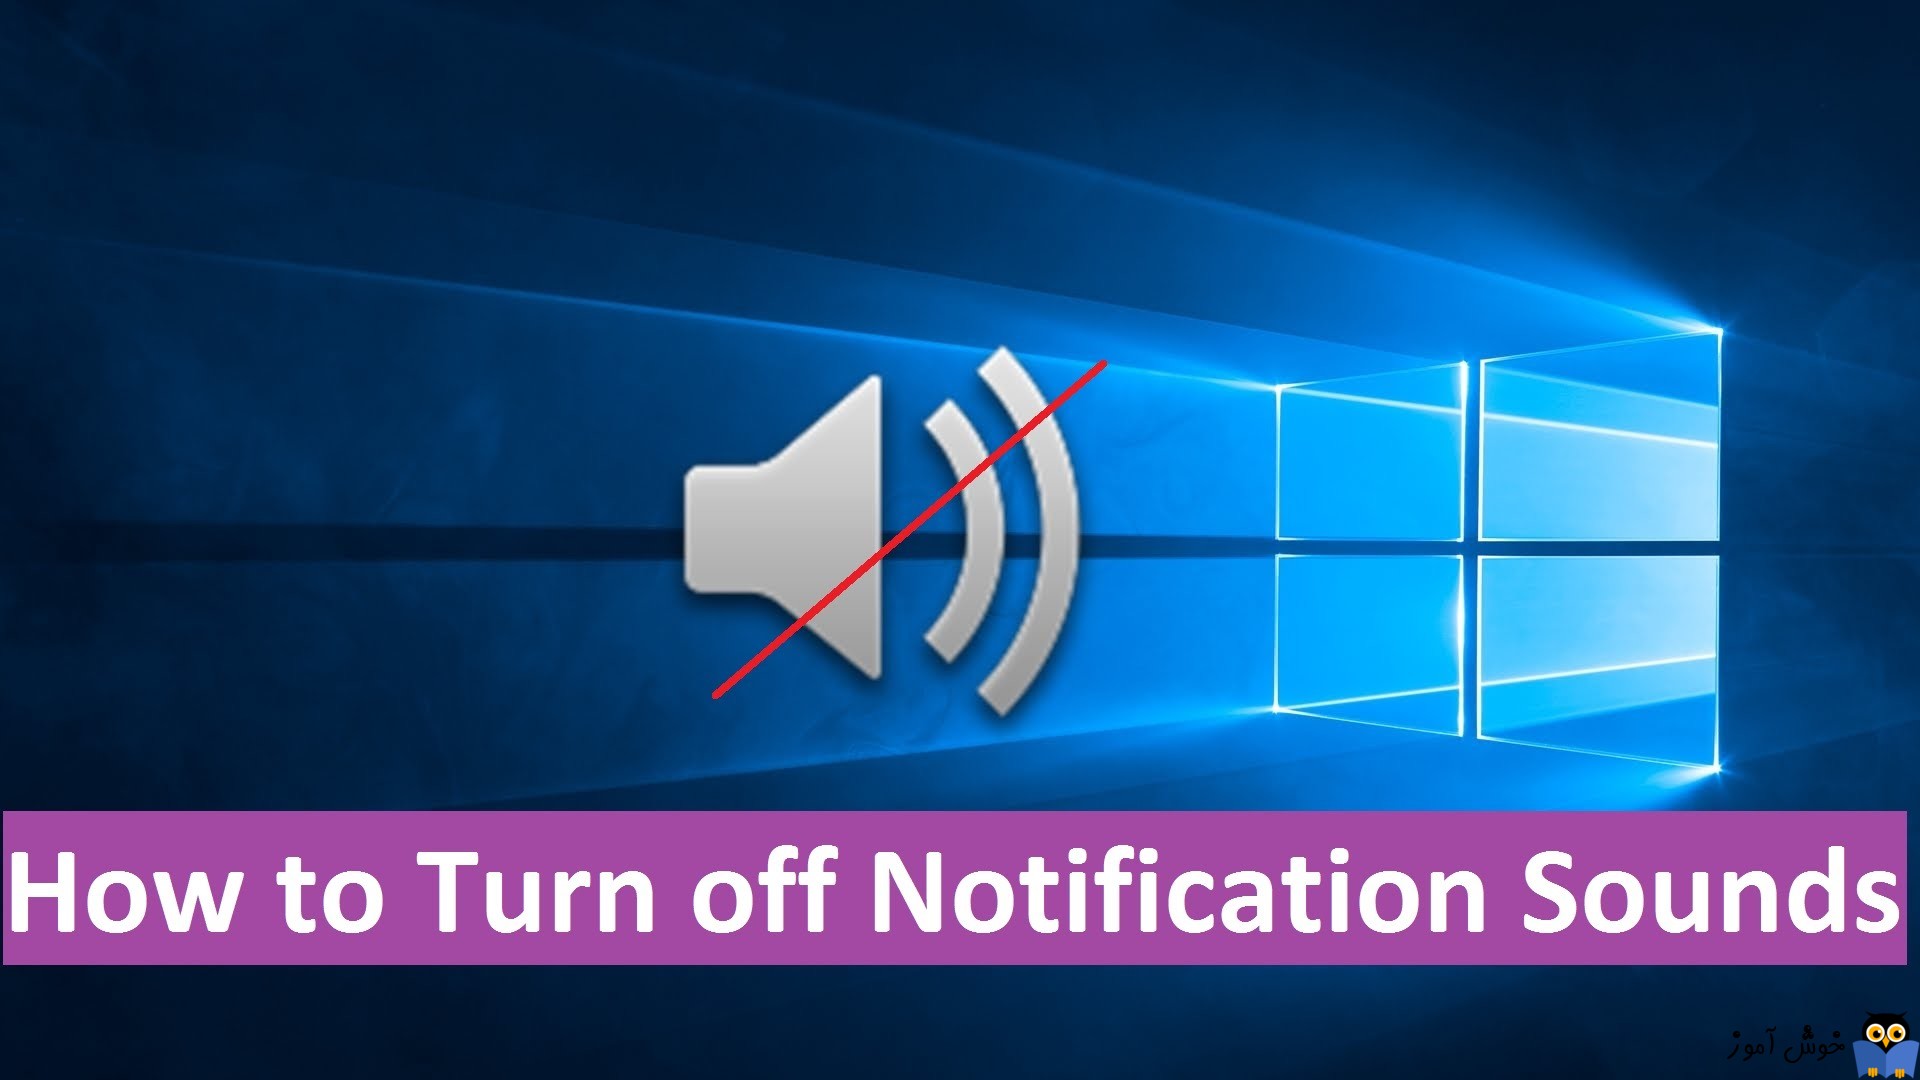 غیرفعال یا Off کردن صدای notification ها در ویندوز